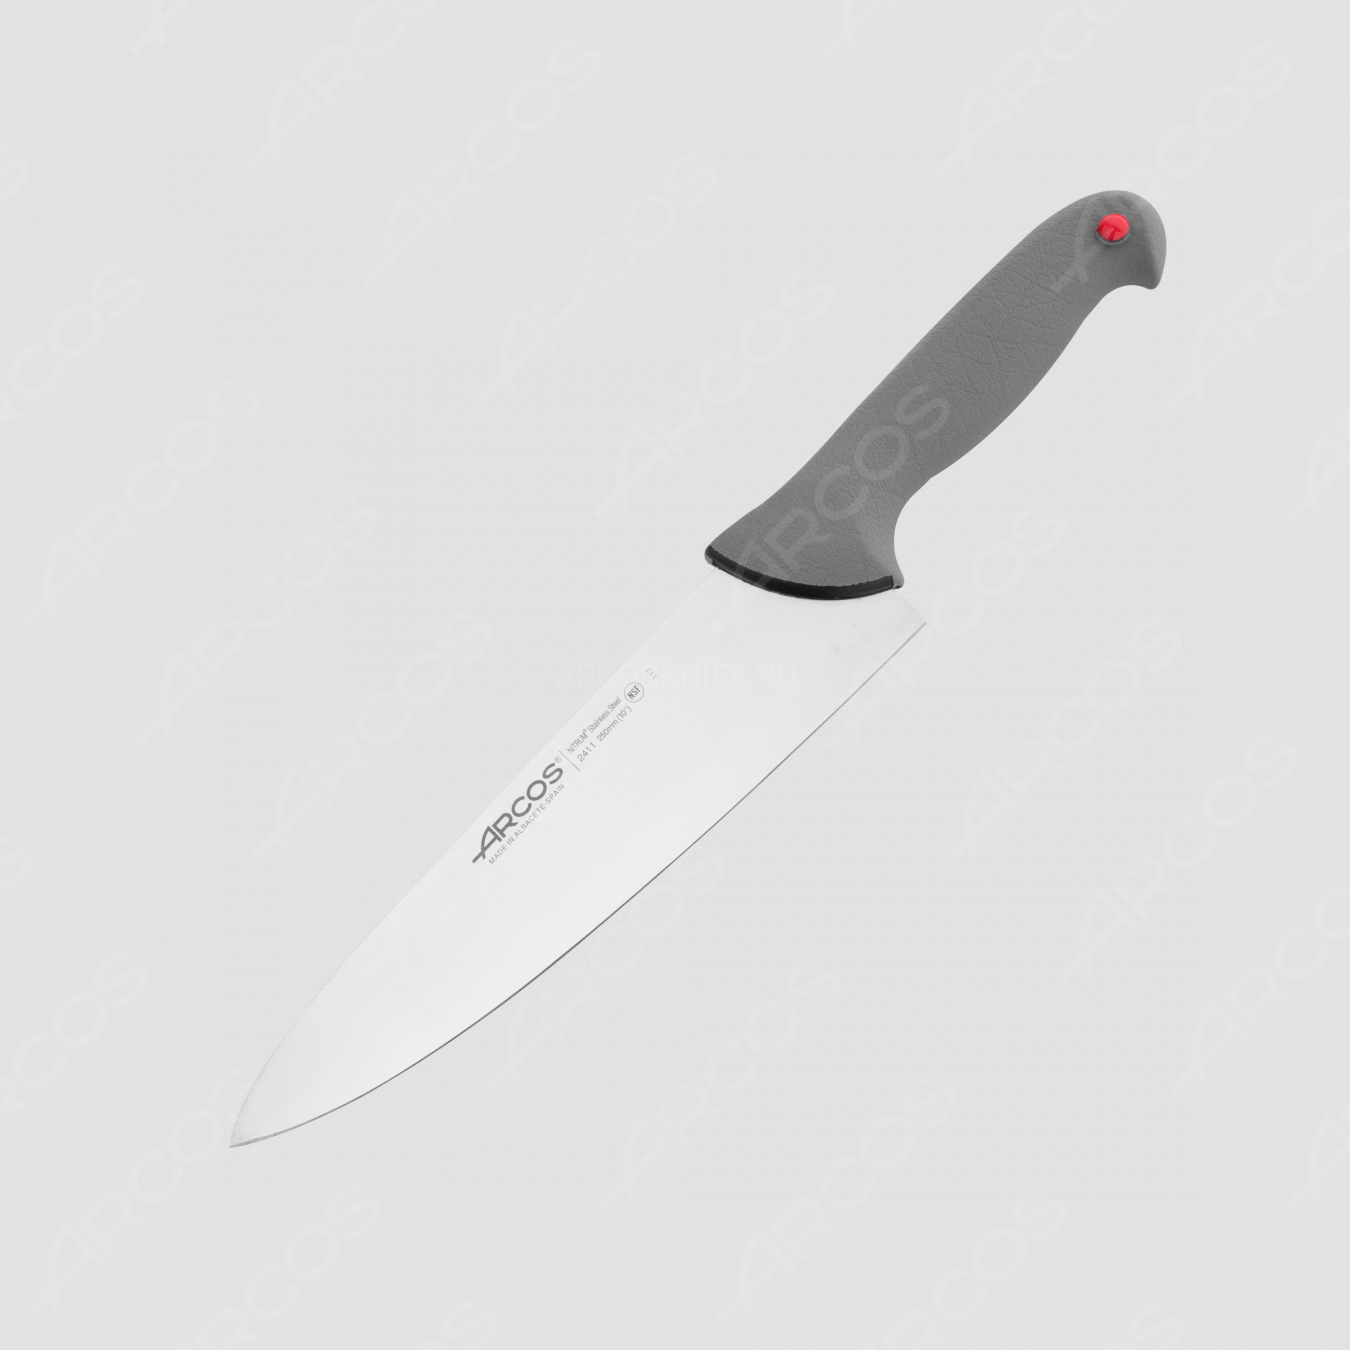 Профессиональный поварской кухонный нож 25 см, серия Colour-prof, ARCOS, Испания